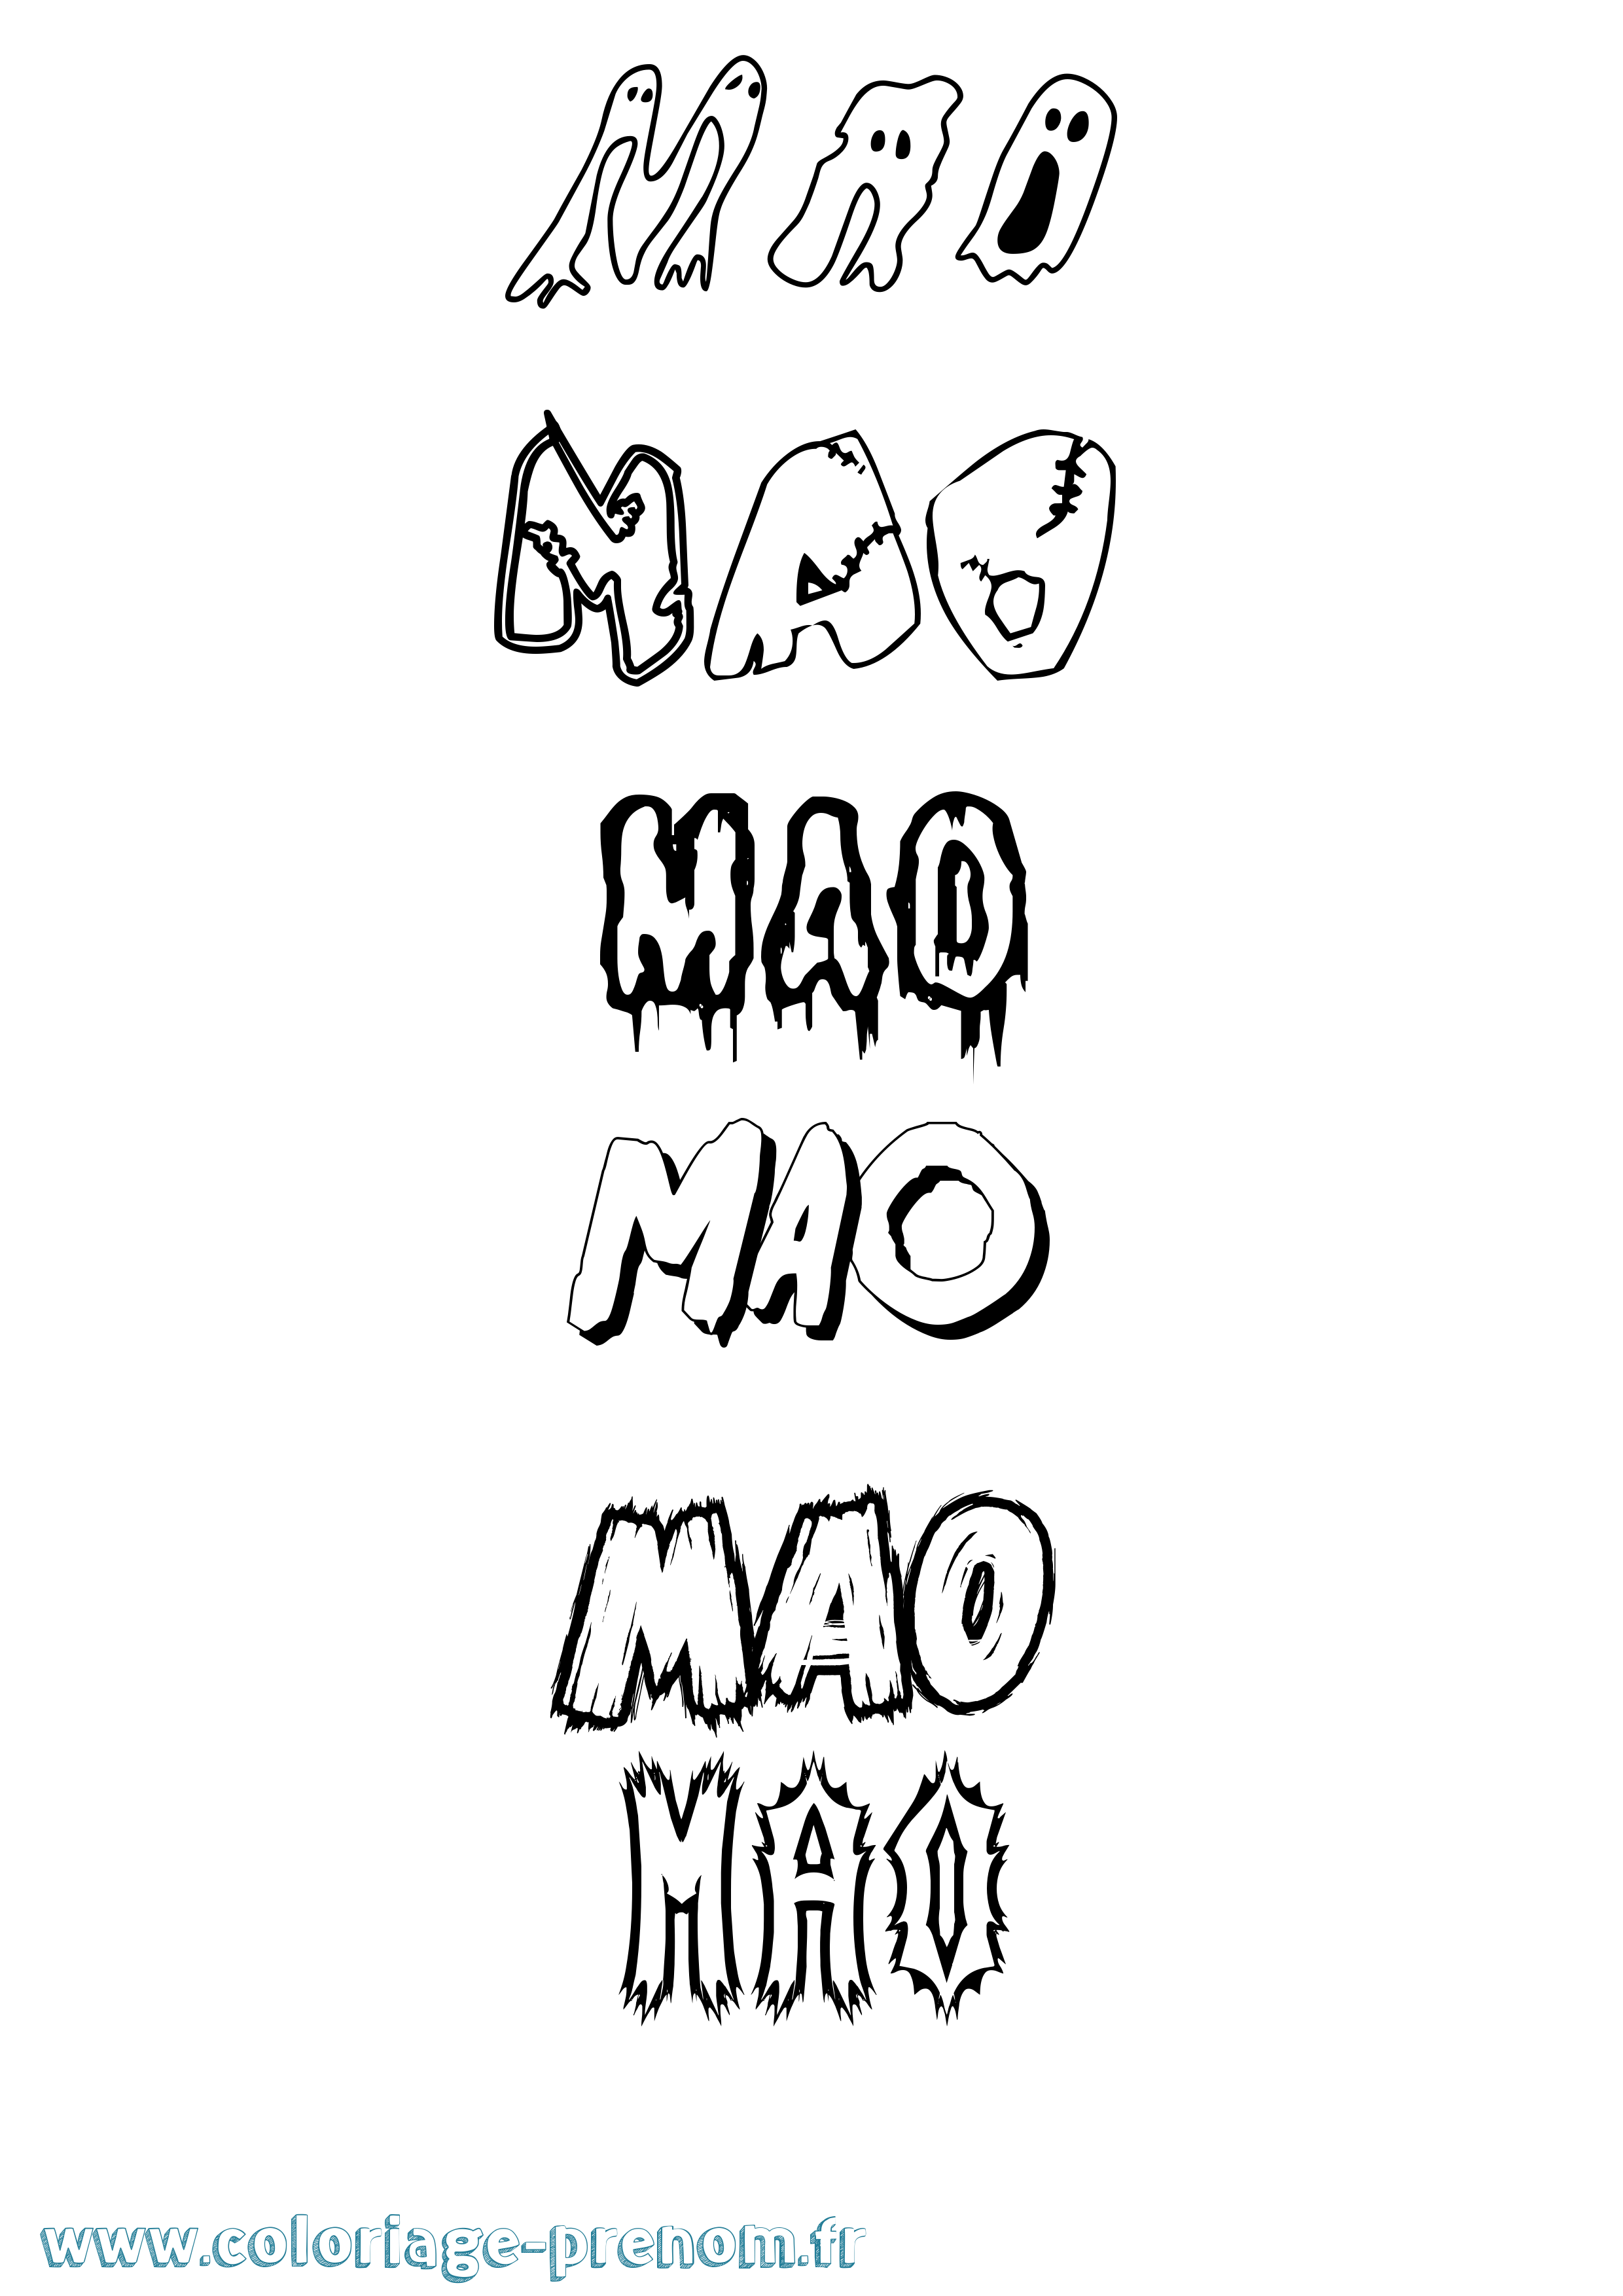 Coloriage prénom Mao Frisson